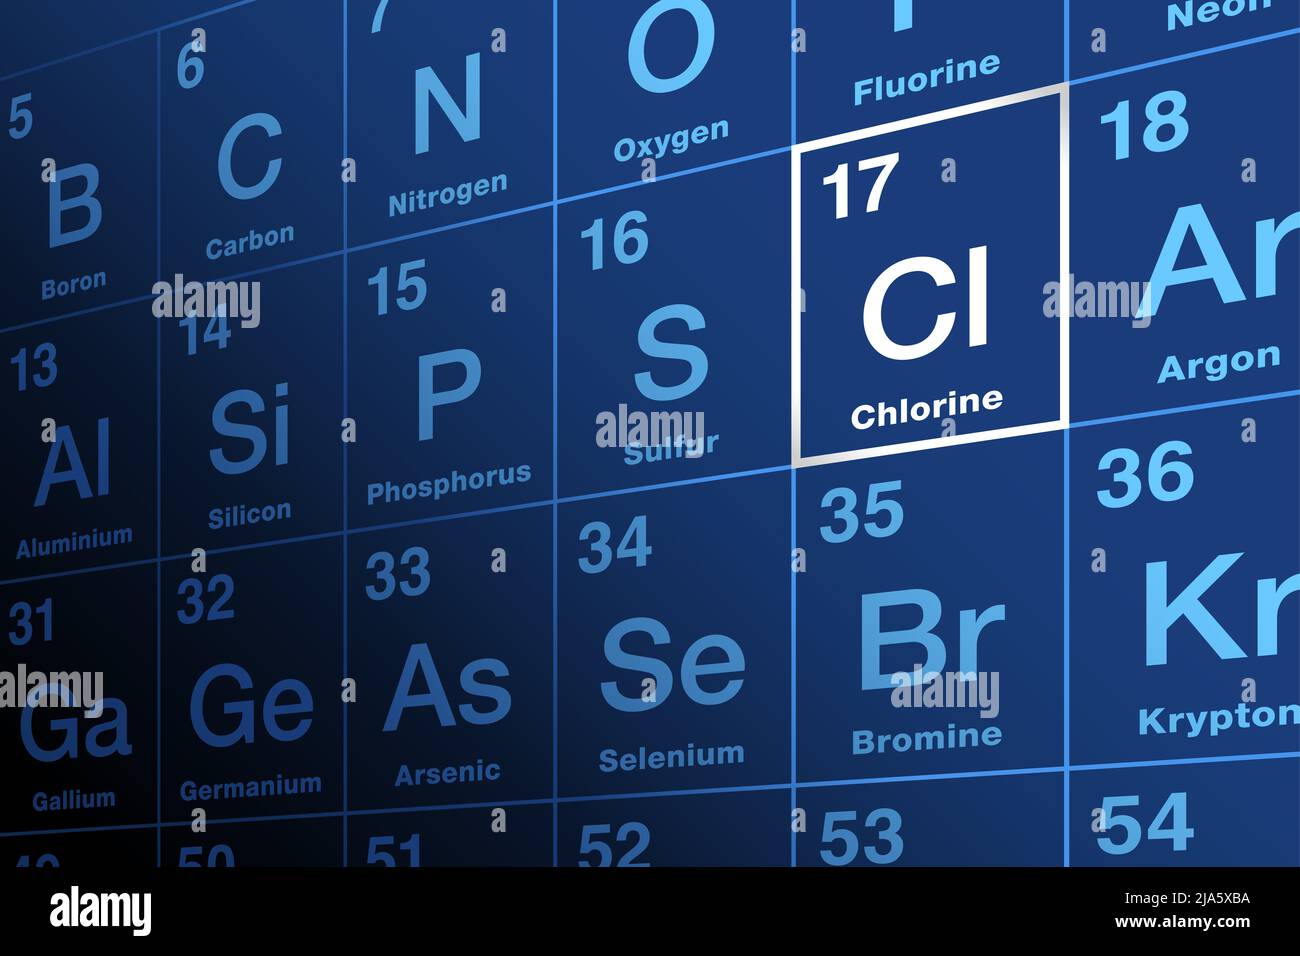 Cloro en la tabla periódica de los elementos. Elemento químico y halógeno con el símbolo CL y número atómico 17. Foto de stock